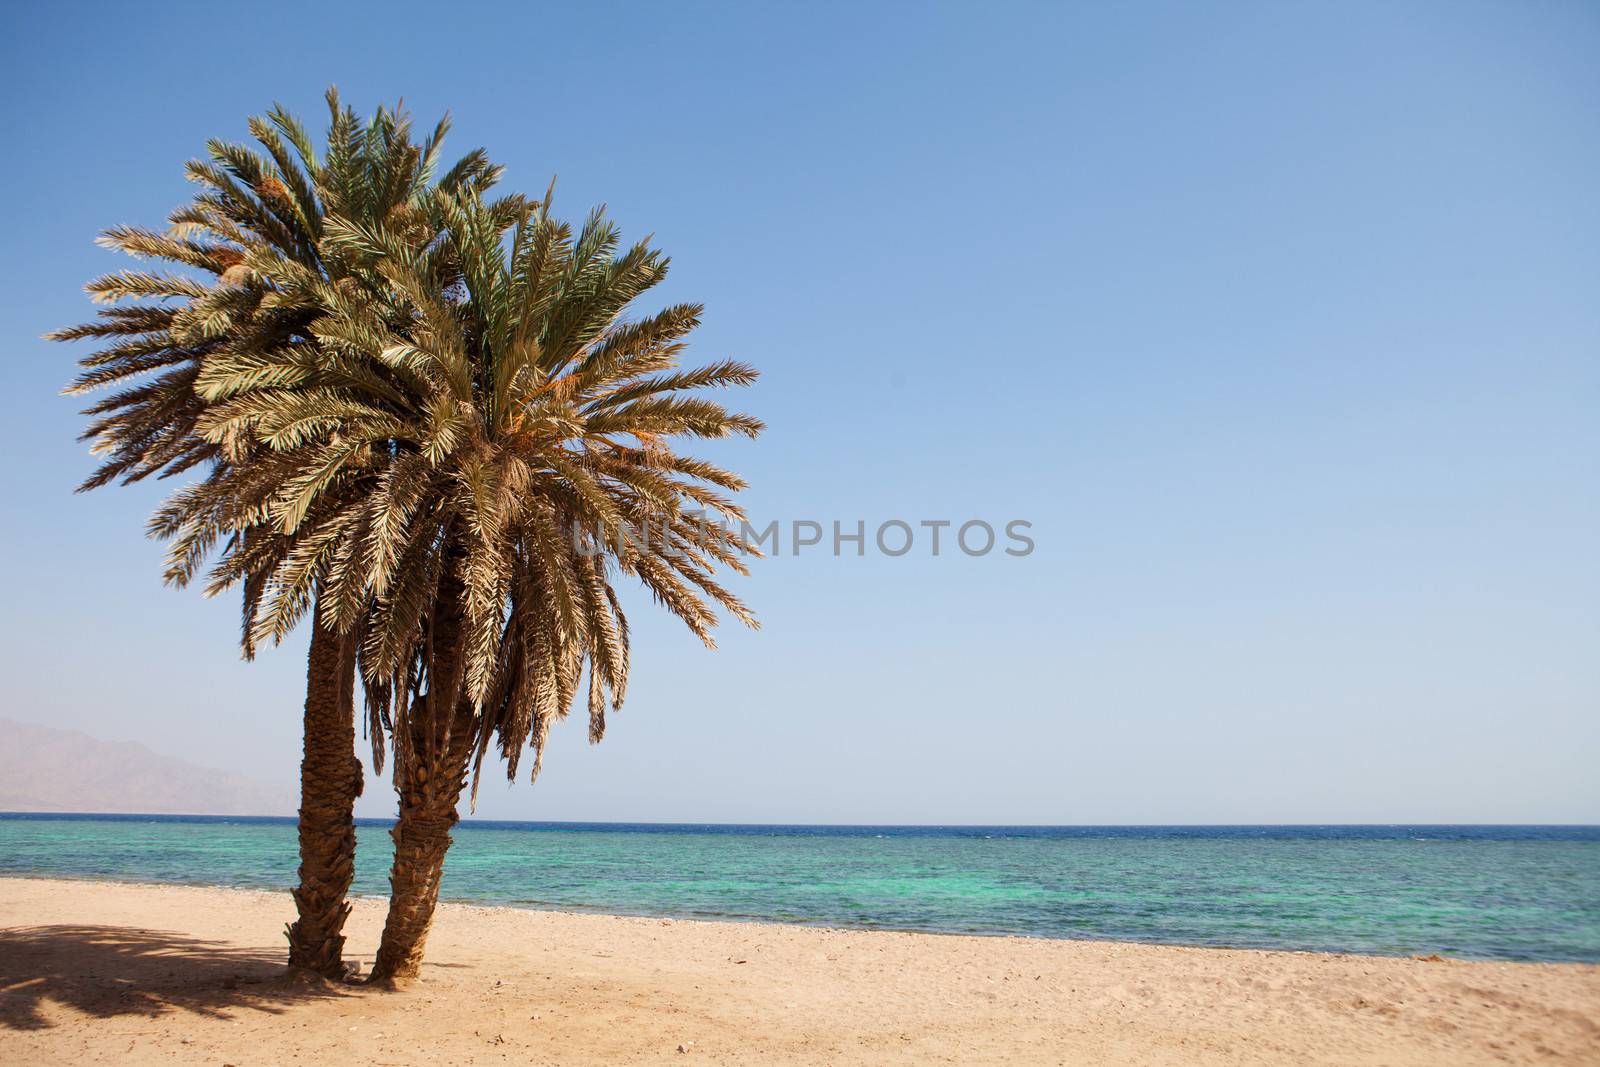 palms on the beach by vsurkov